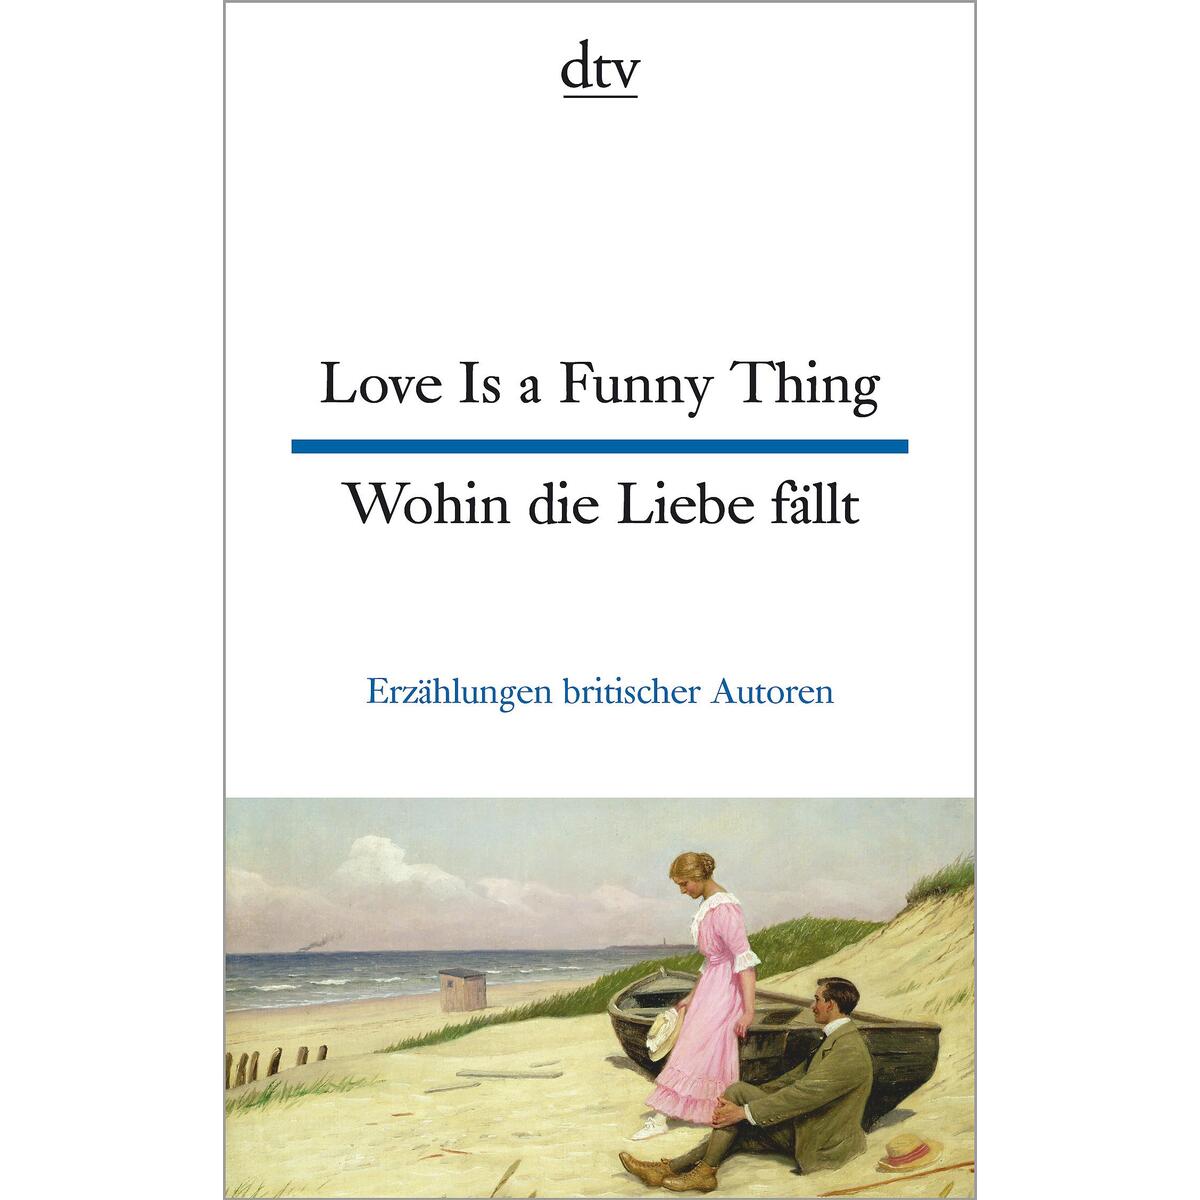 Love Is a Funny Thing - Wohin die Liebe fällt von dtv Verlagsgesellschaft